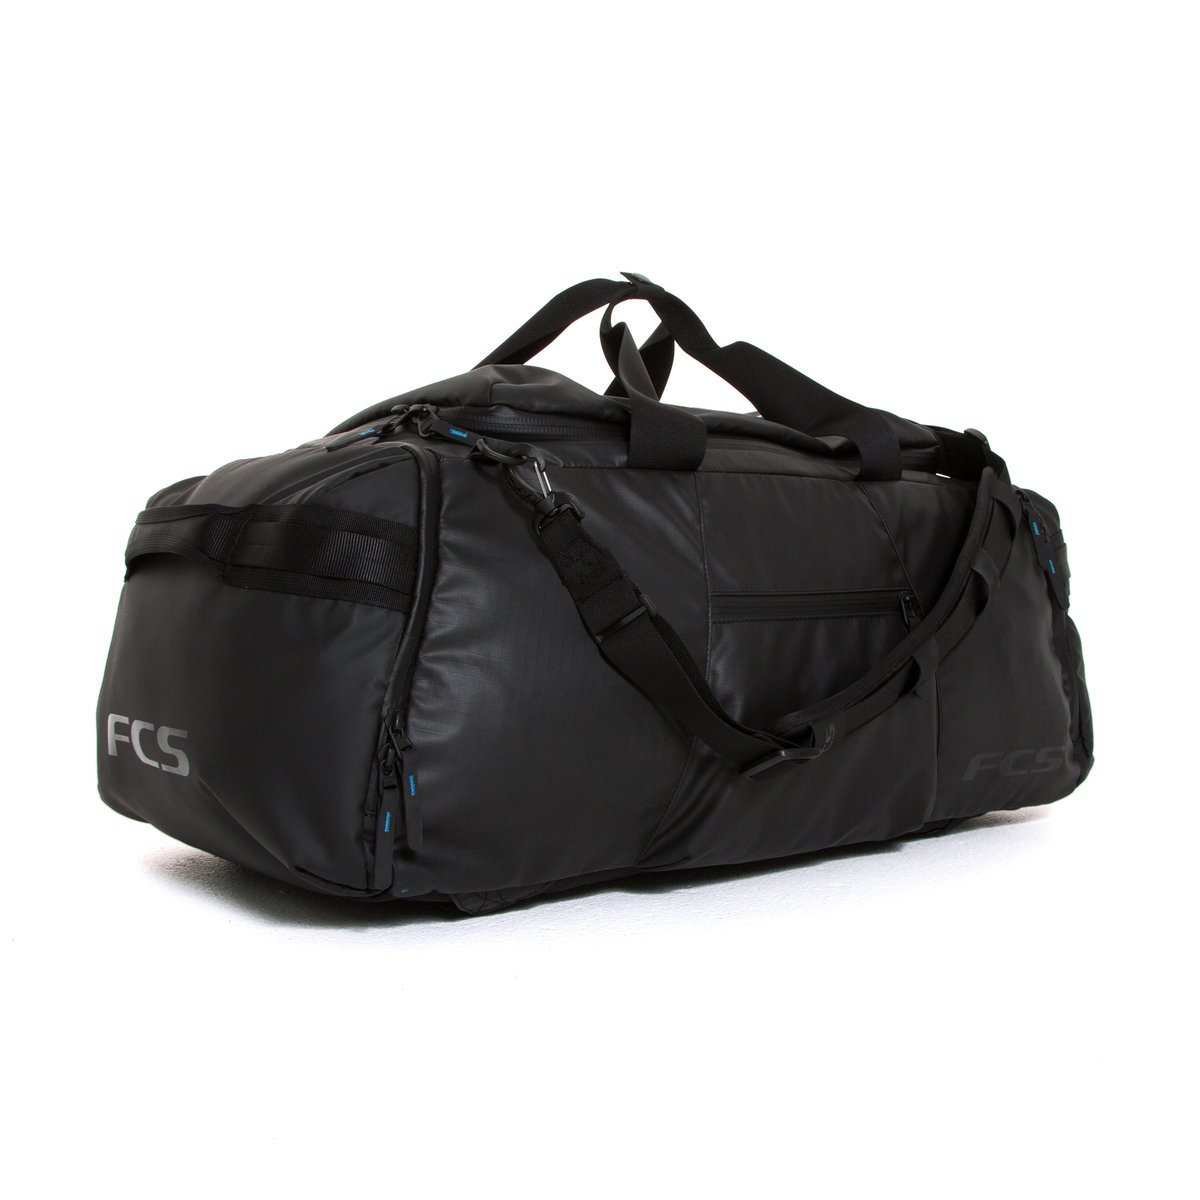   Mochila FCS Duffel Travel Bag